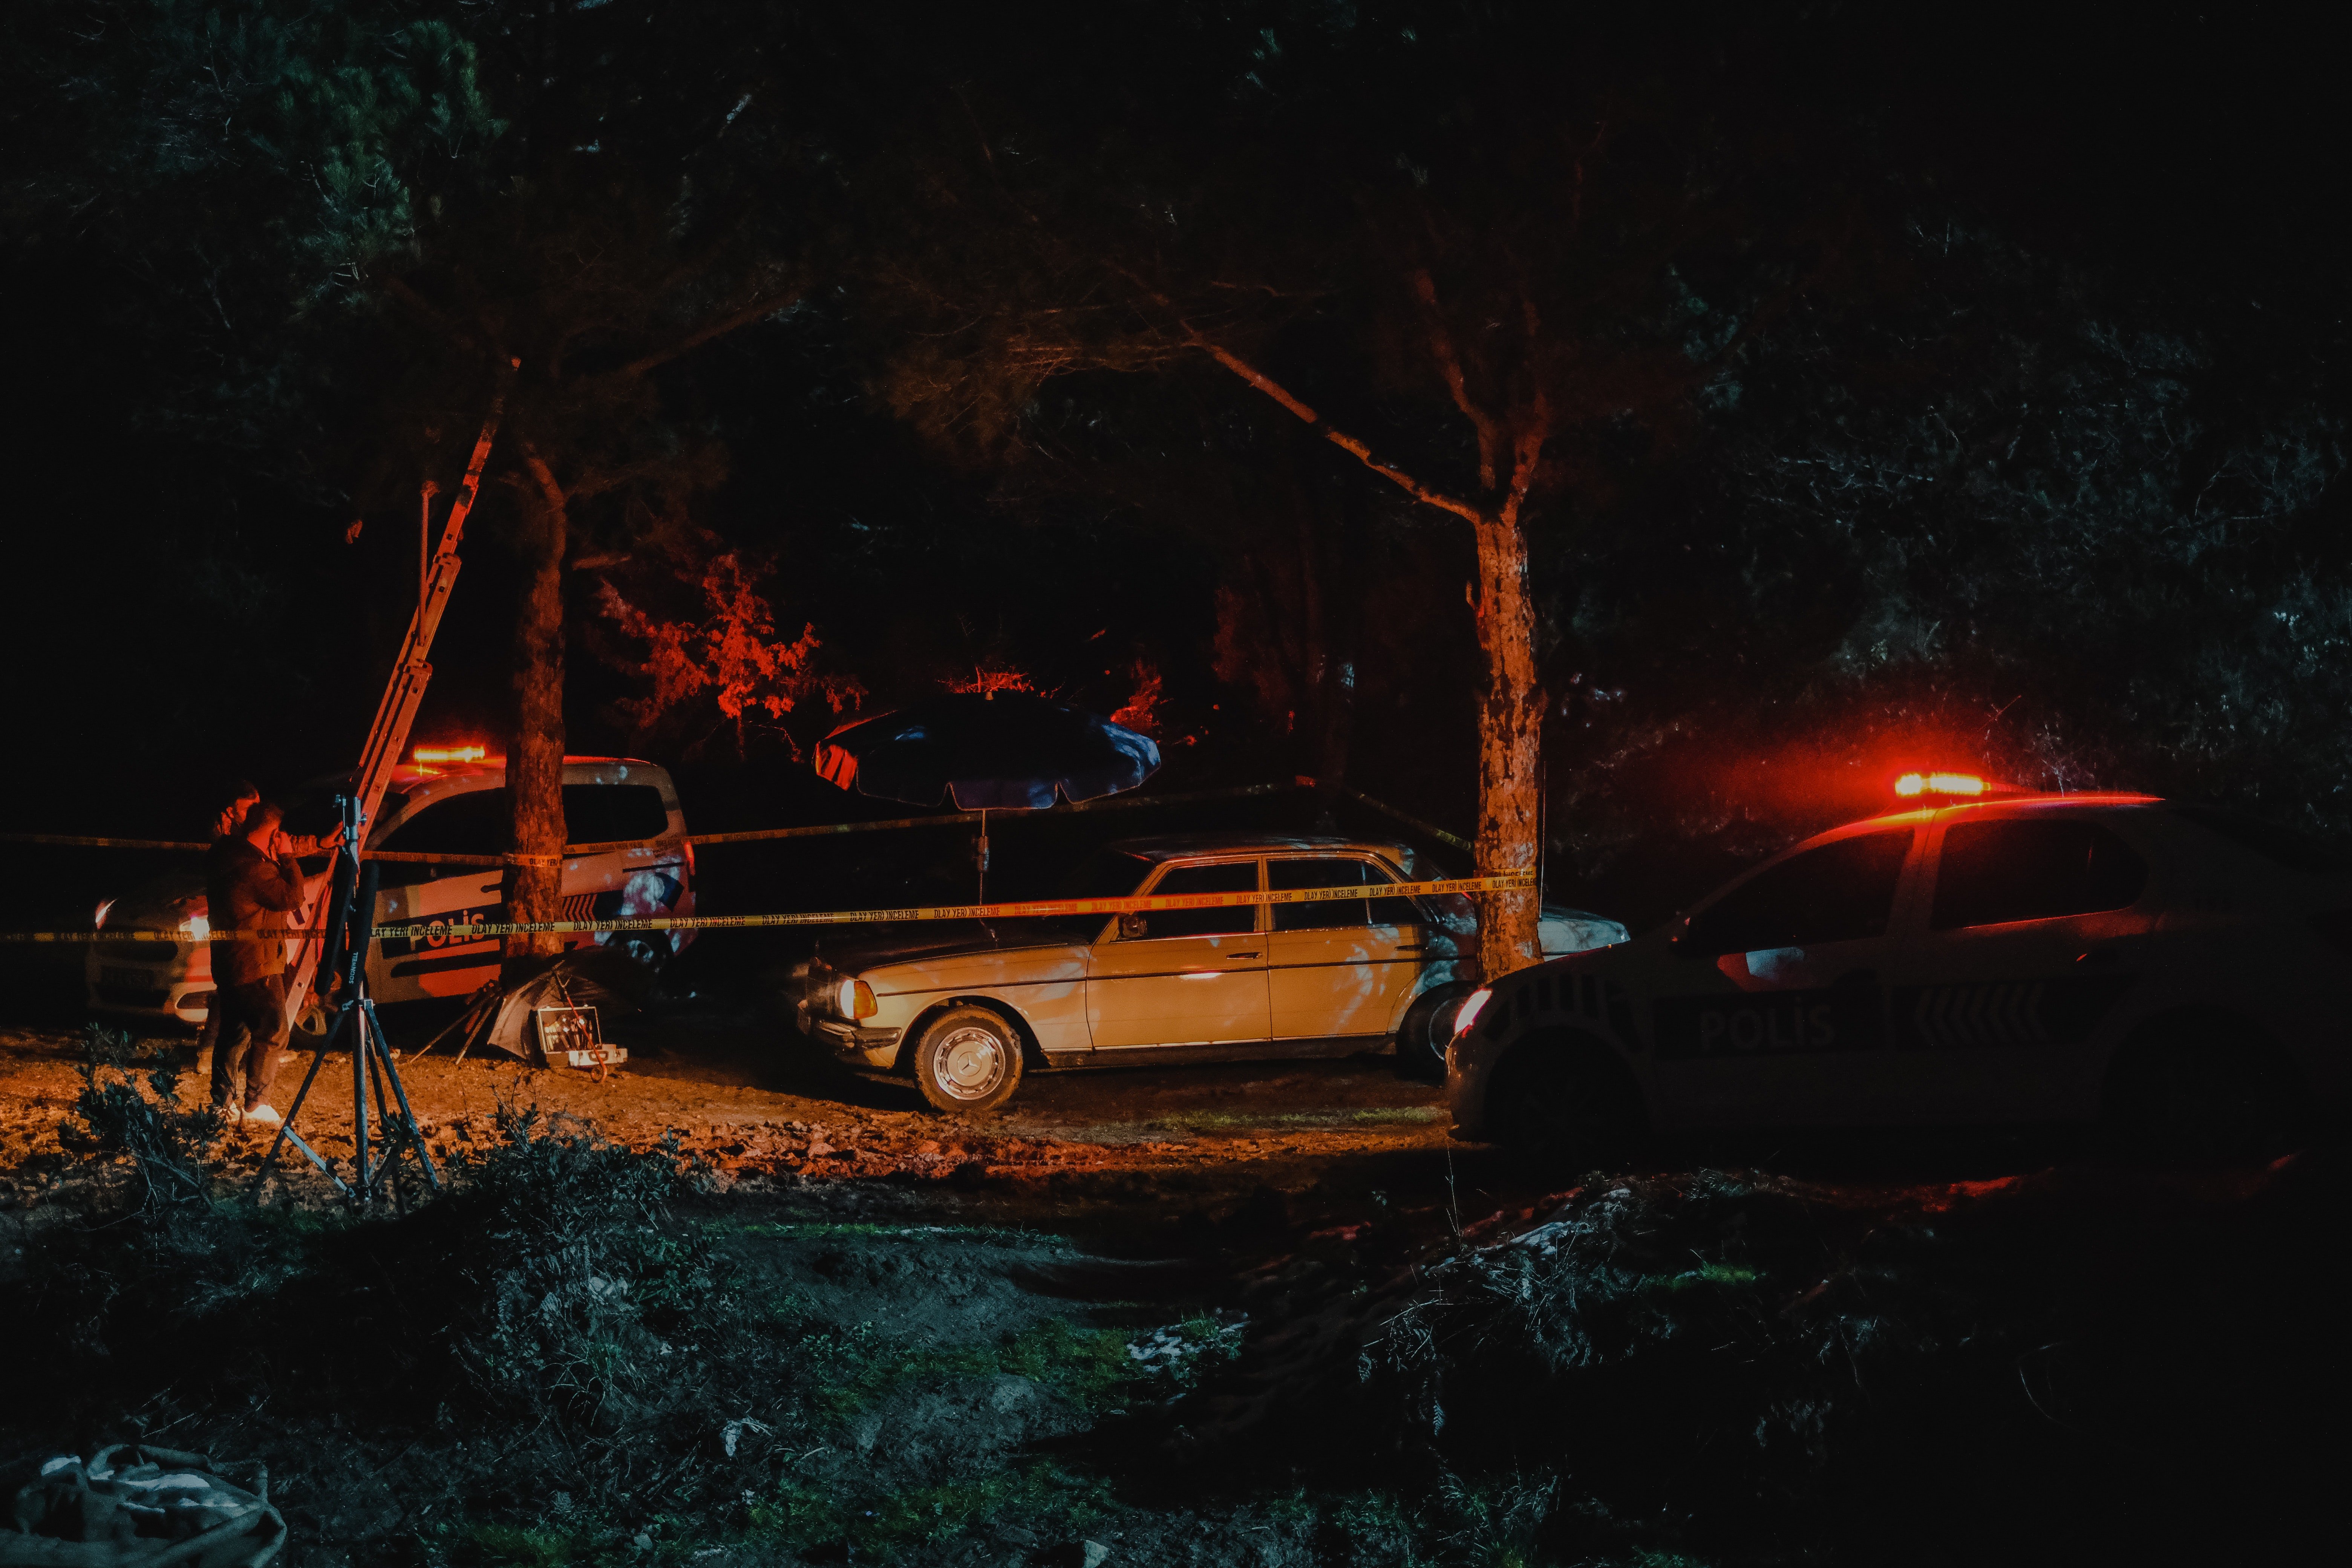 La voiture d'Adam s'est écrasée contre un arbre. | Source : Pexels